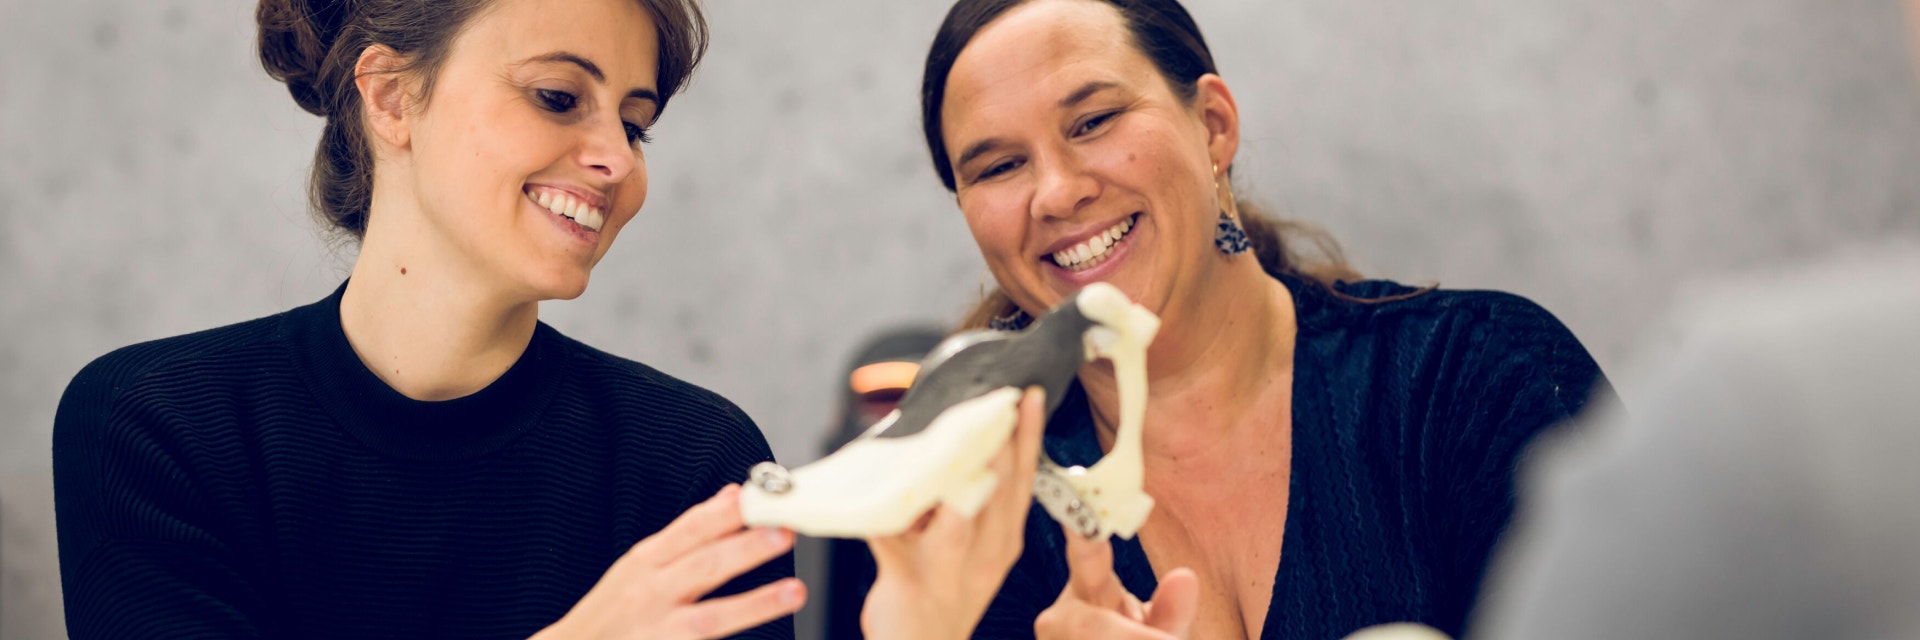 Dos mujeres sonrientes que miran a una pieza impresa en 3D